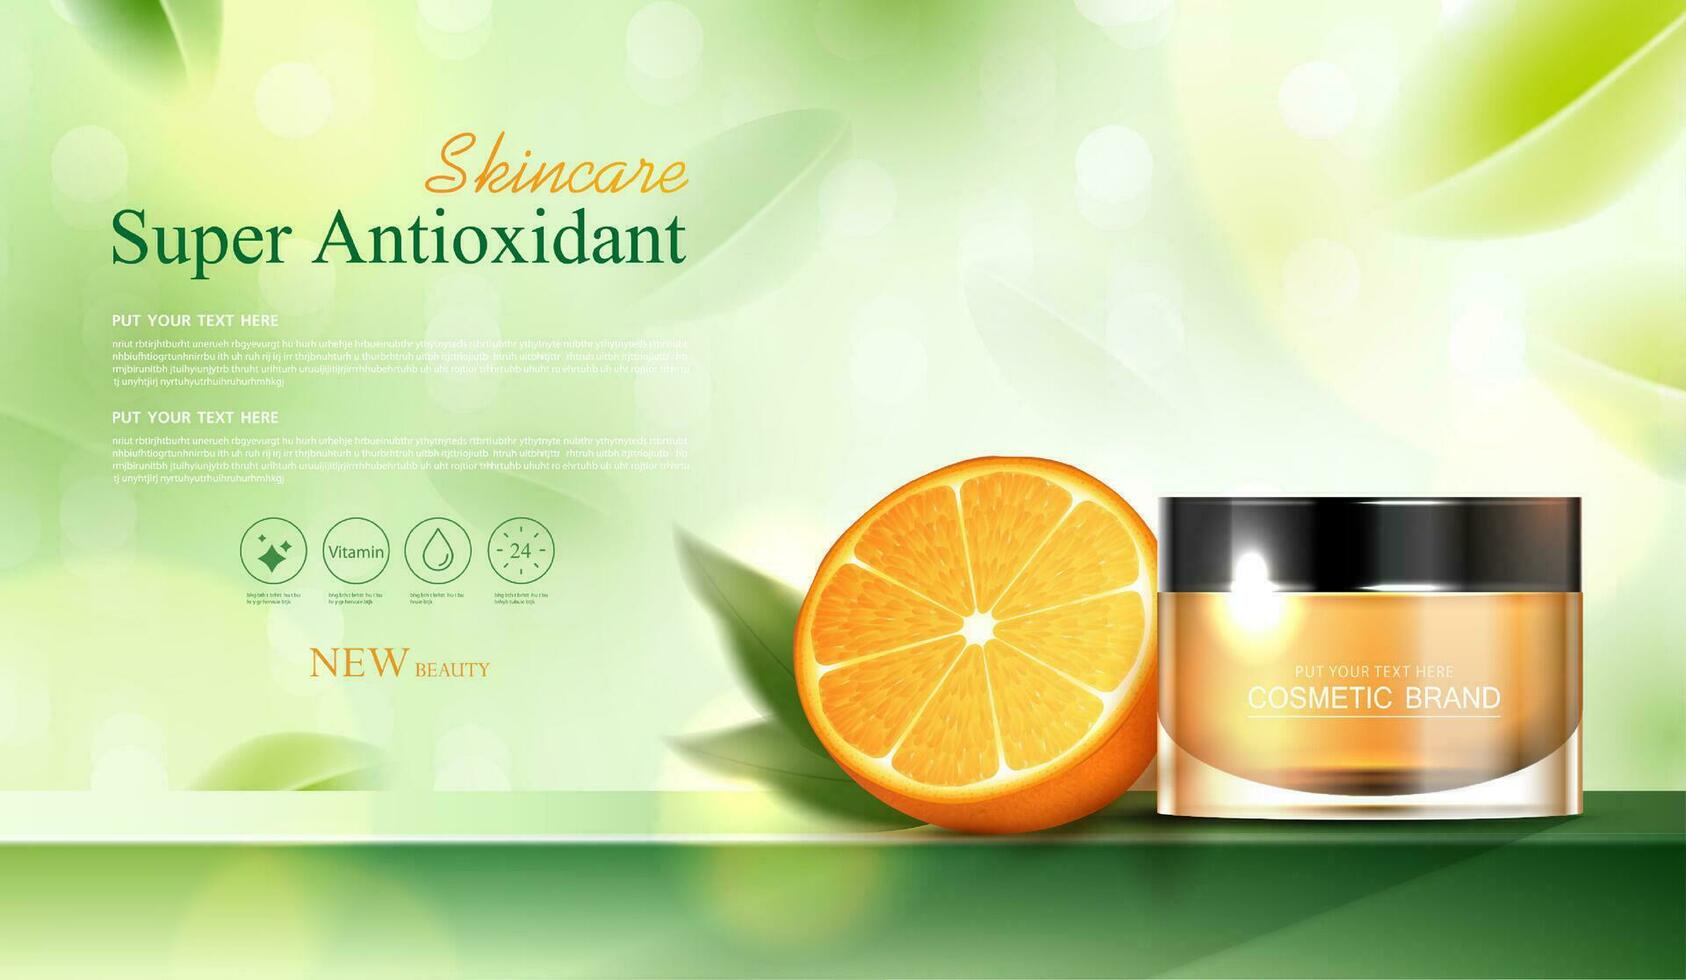 schoonheidsmiddelen vitamine c of huid zorg Product advertenties met fles, realistisch pakket model. banier advertentie voor schoonheid producten en oranje achtergrond. vector ontwerp.